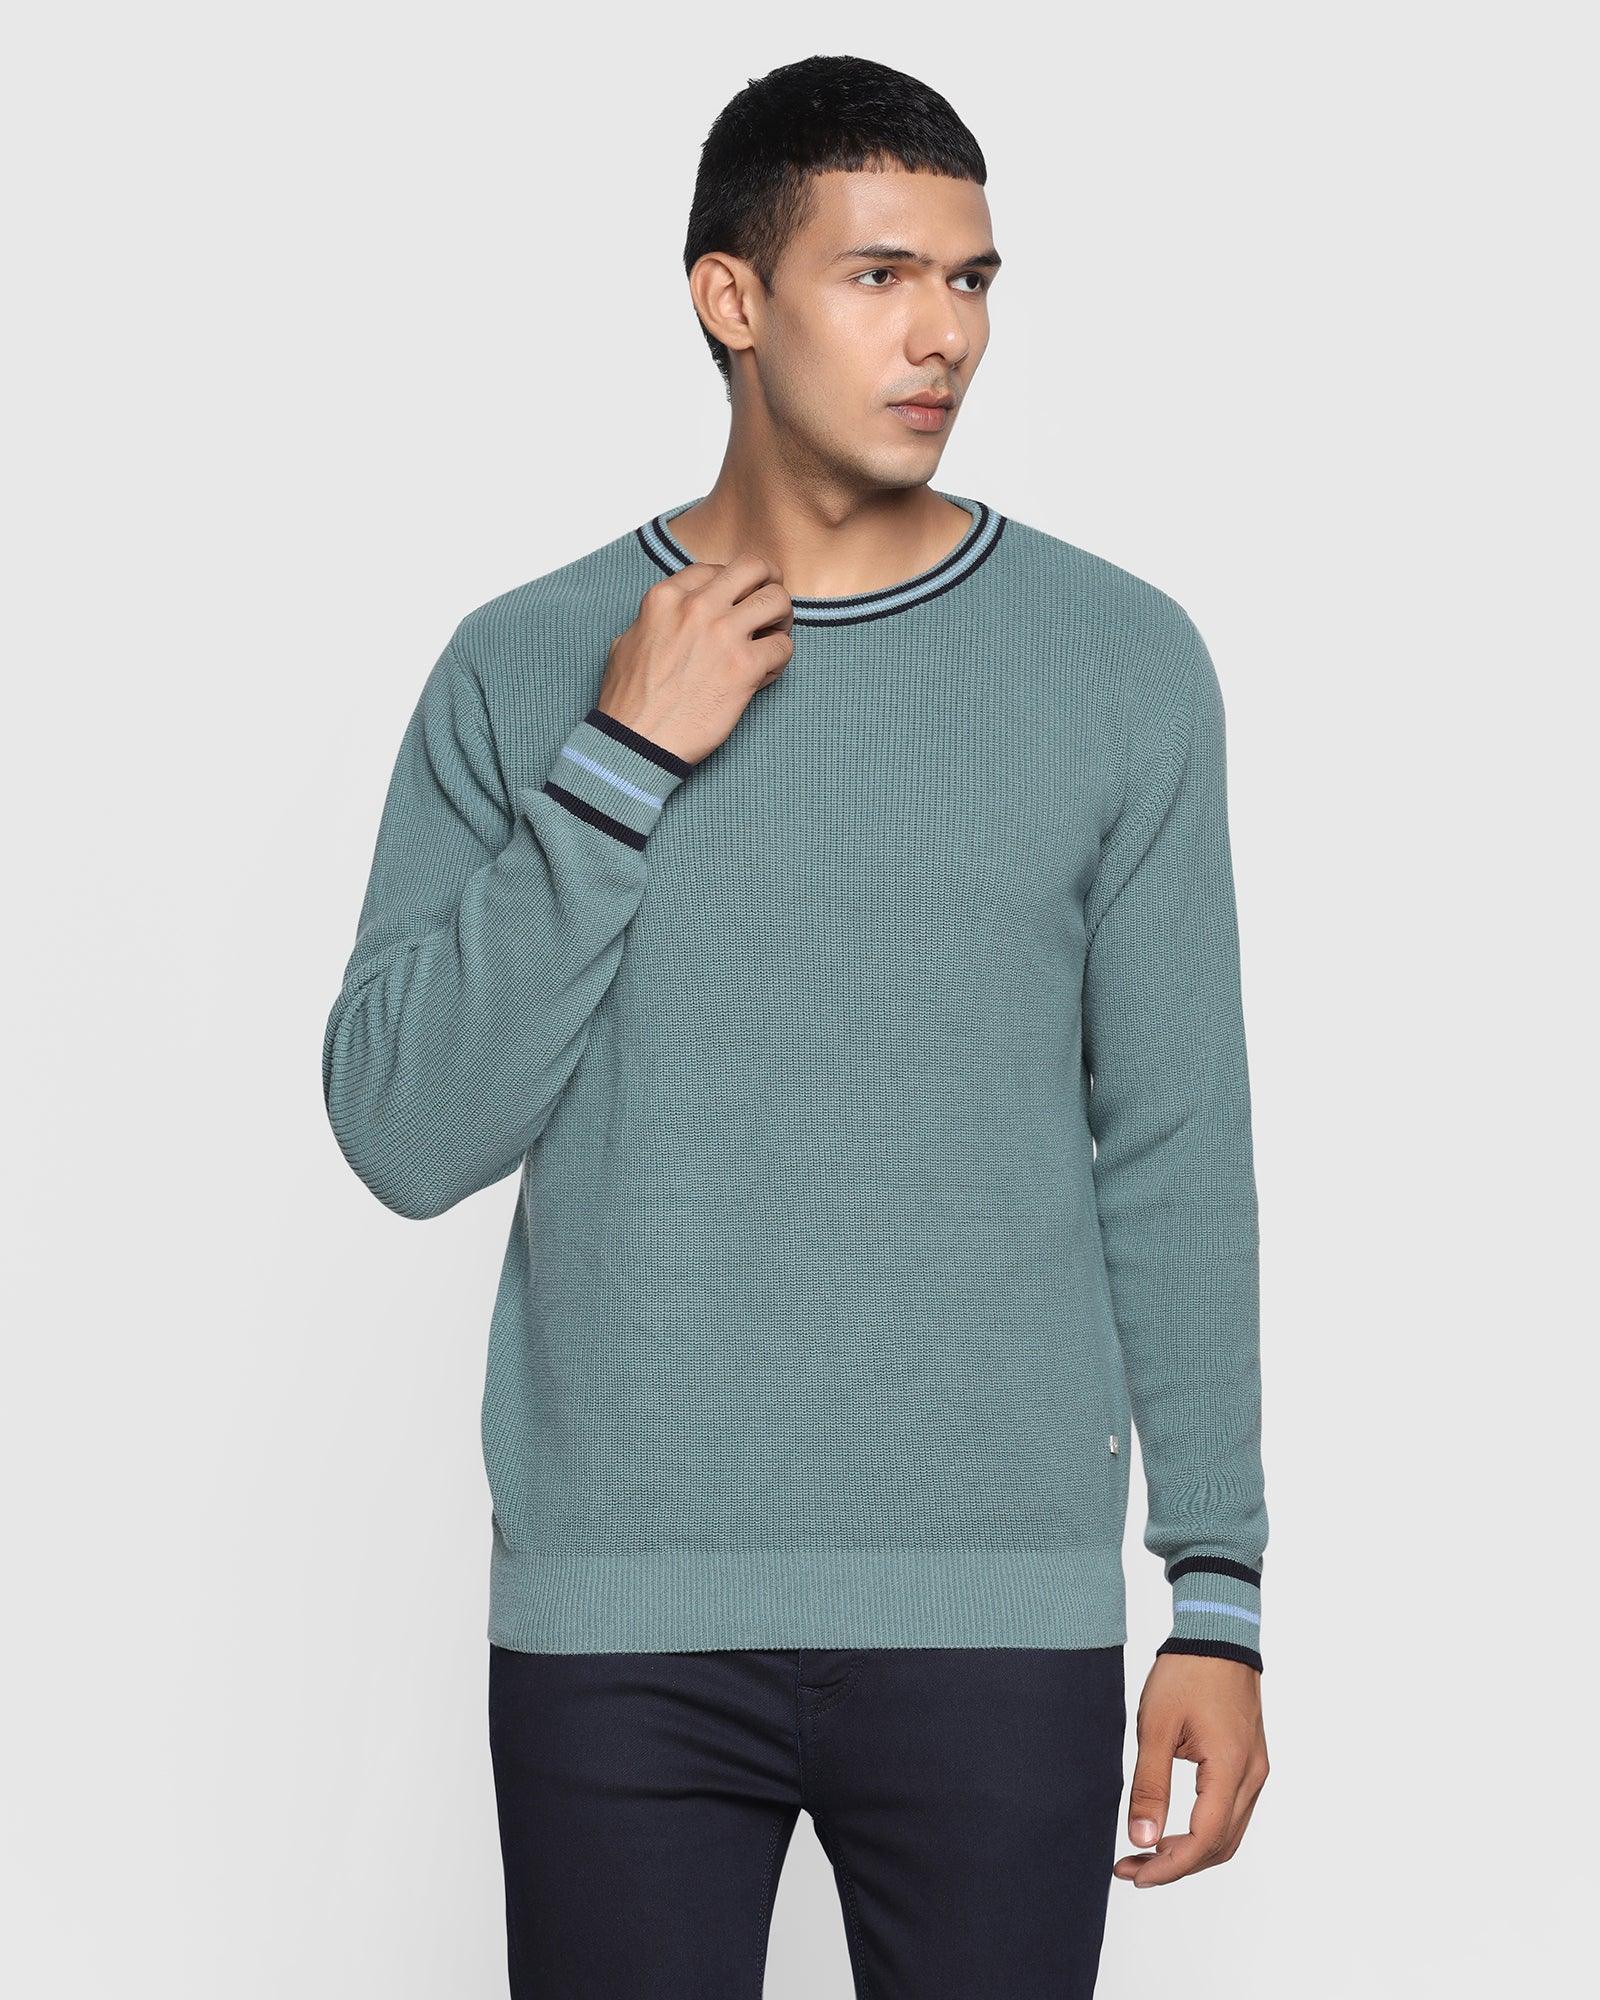 Crew Neck Placid Blue Solid Sweater - Bonne